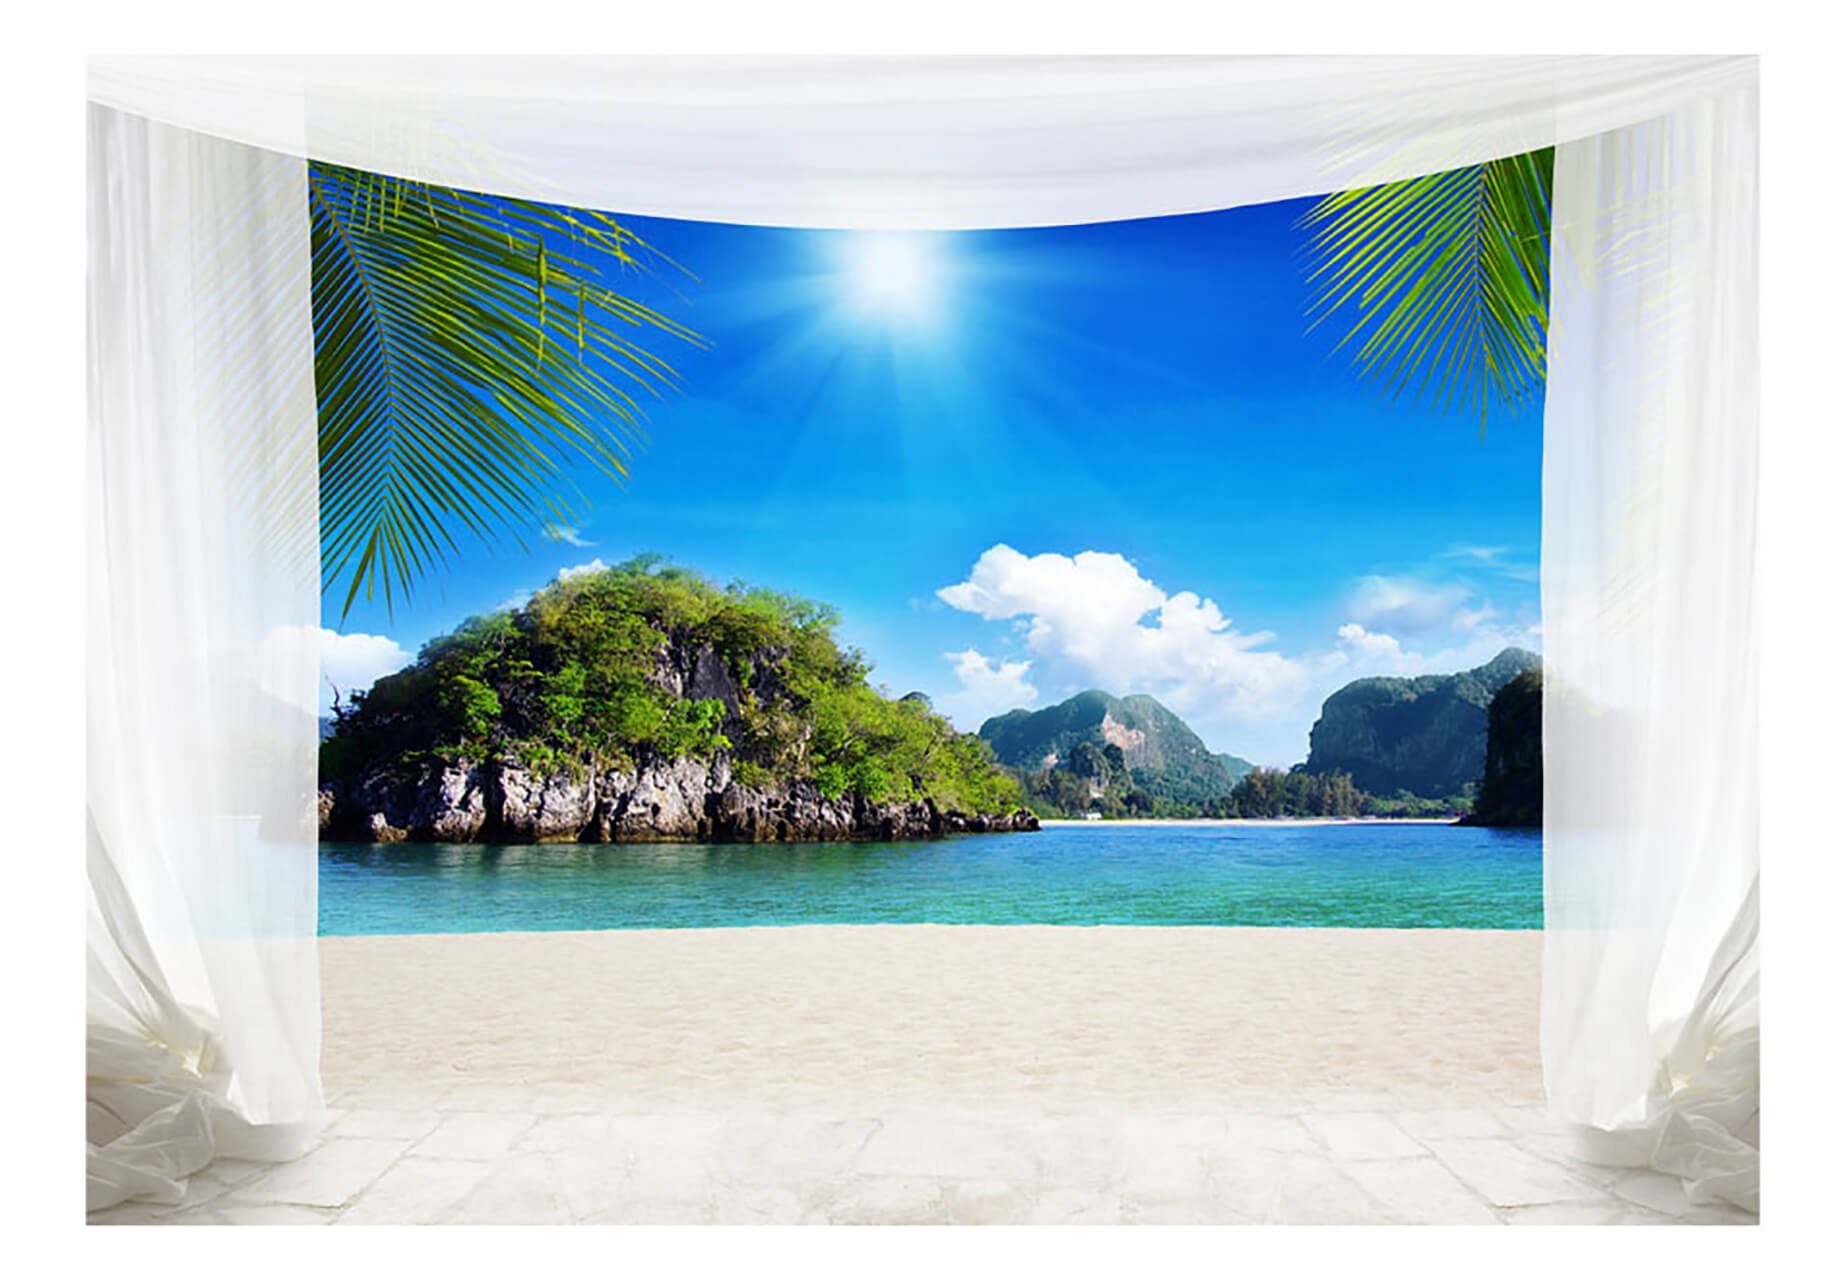 KUNSTLOFT Vliestapete Tropical Paradise 1x0.7 m, halb-matt, lichtbeständige Design Tapete